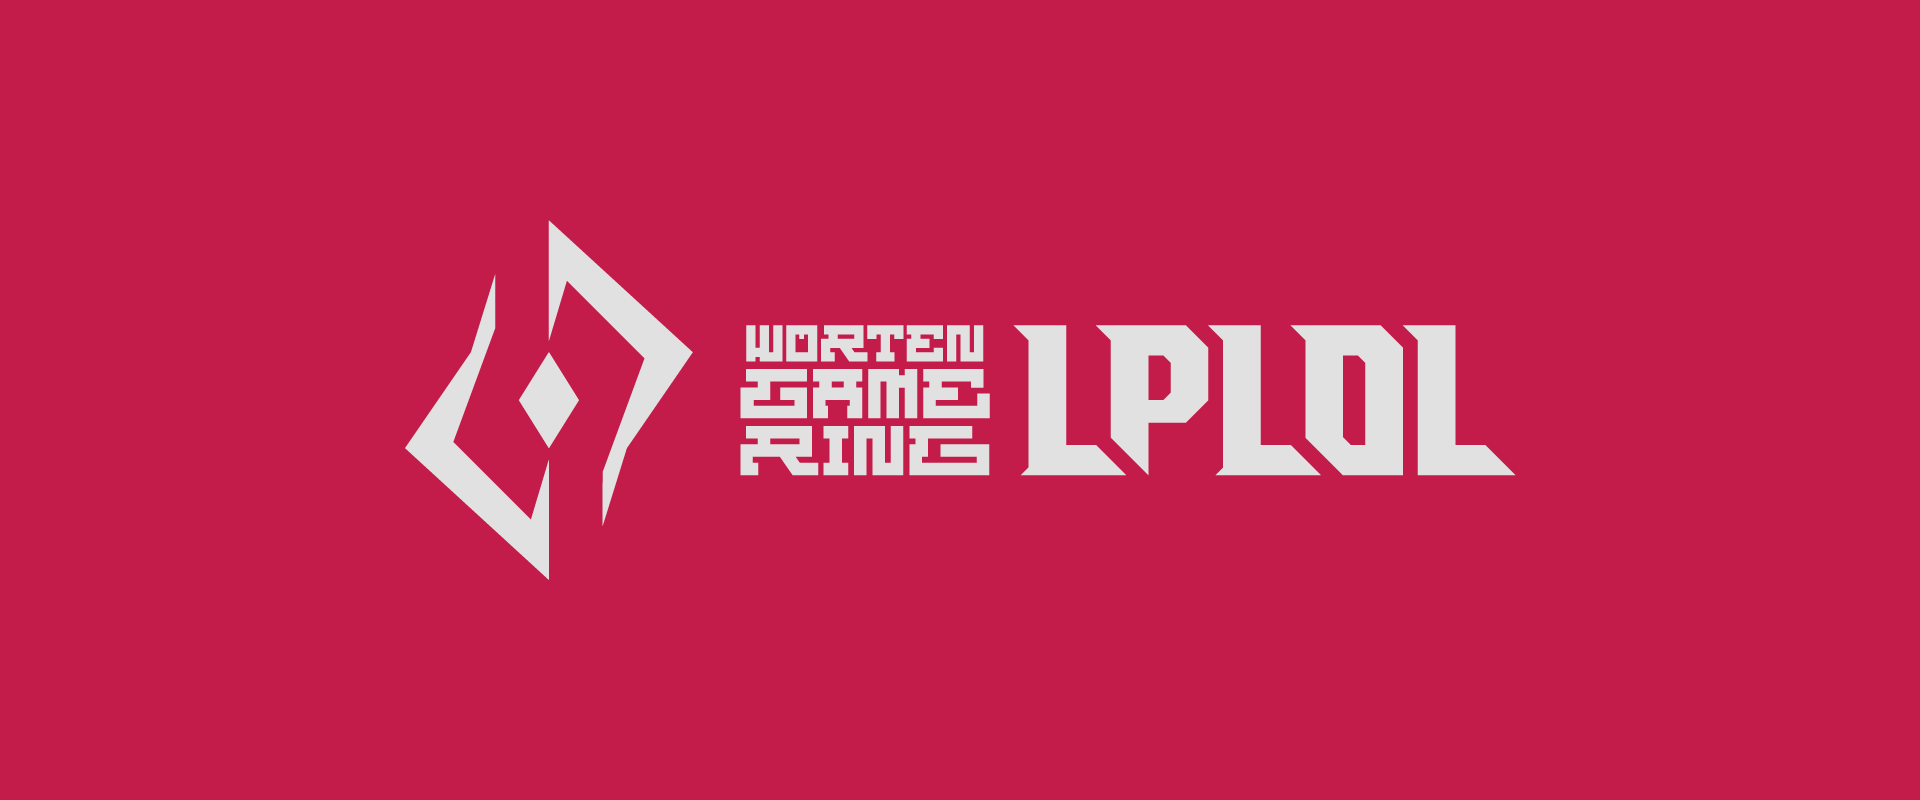 A Worten Game Ring Liga Portuguesa de League of Legends conta agora com Conferências de Imprensa